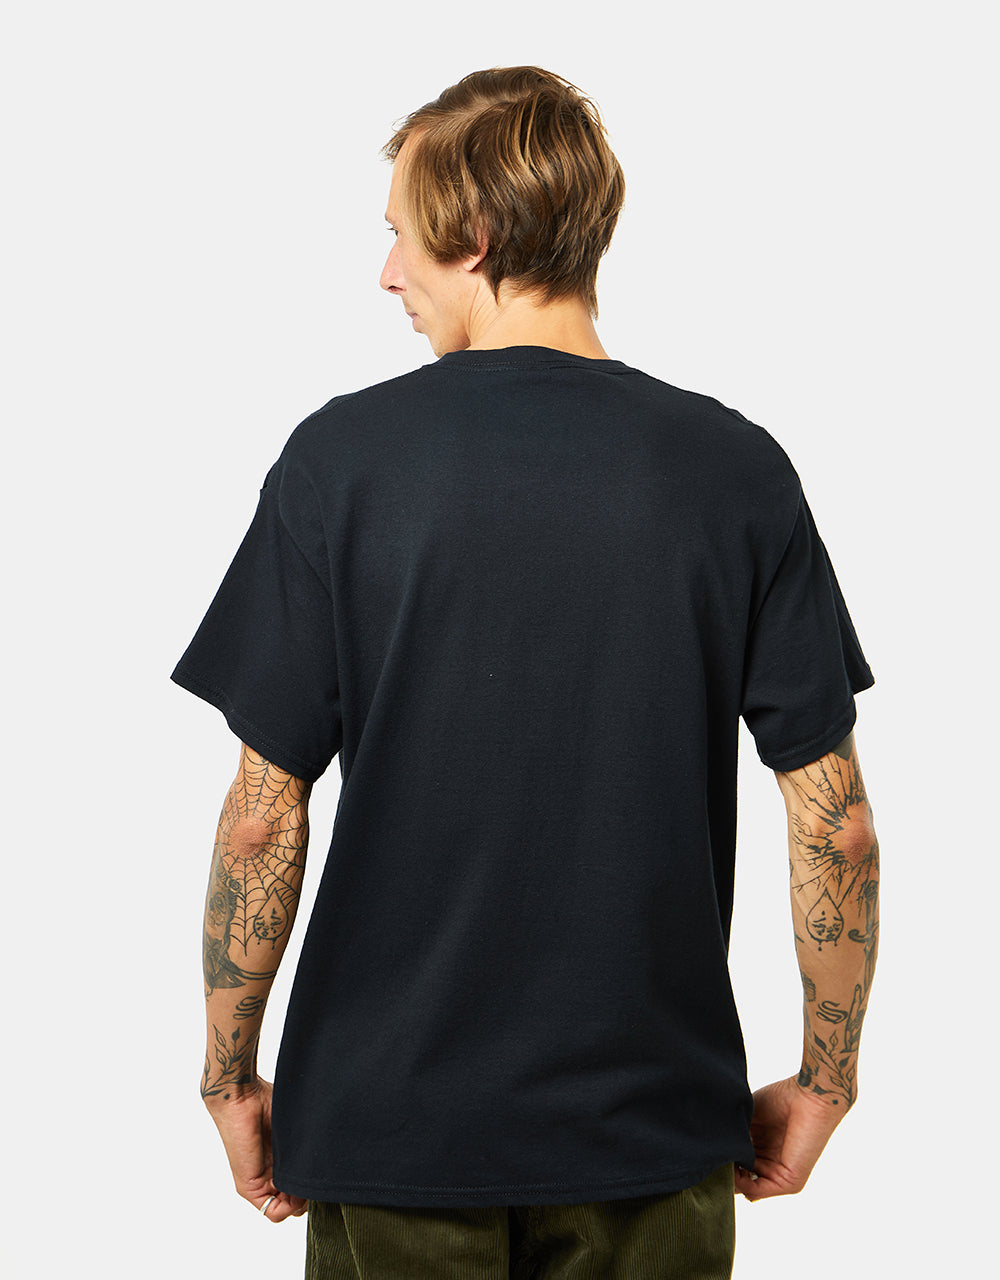 Zero Army T-Shirt - Black/White